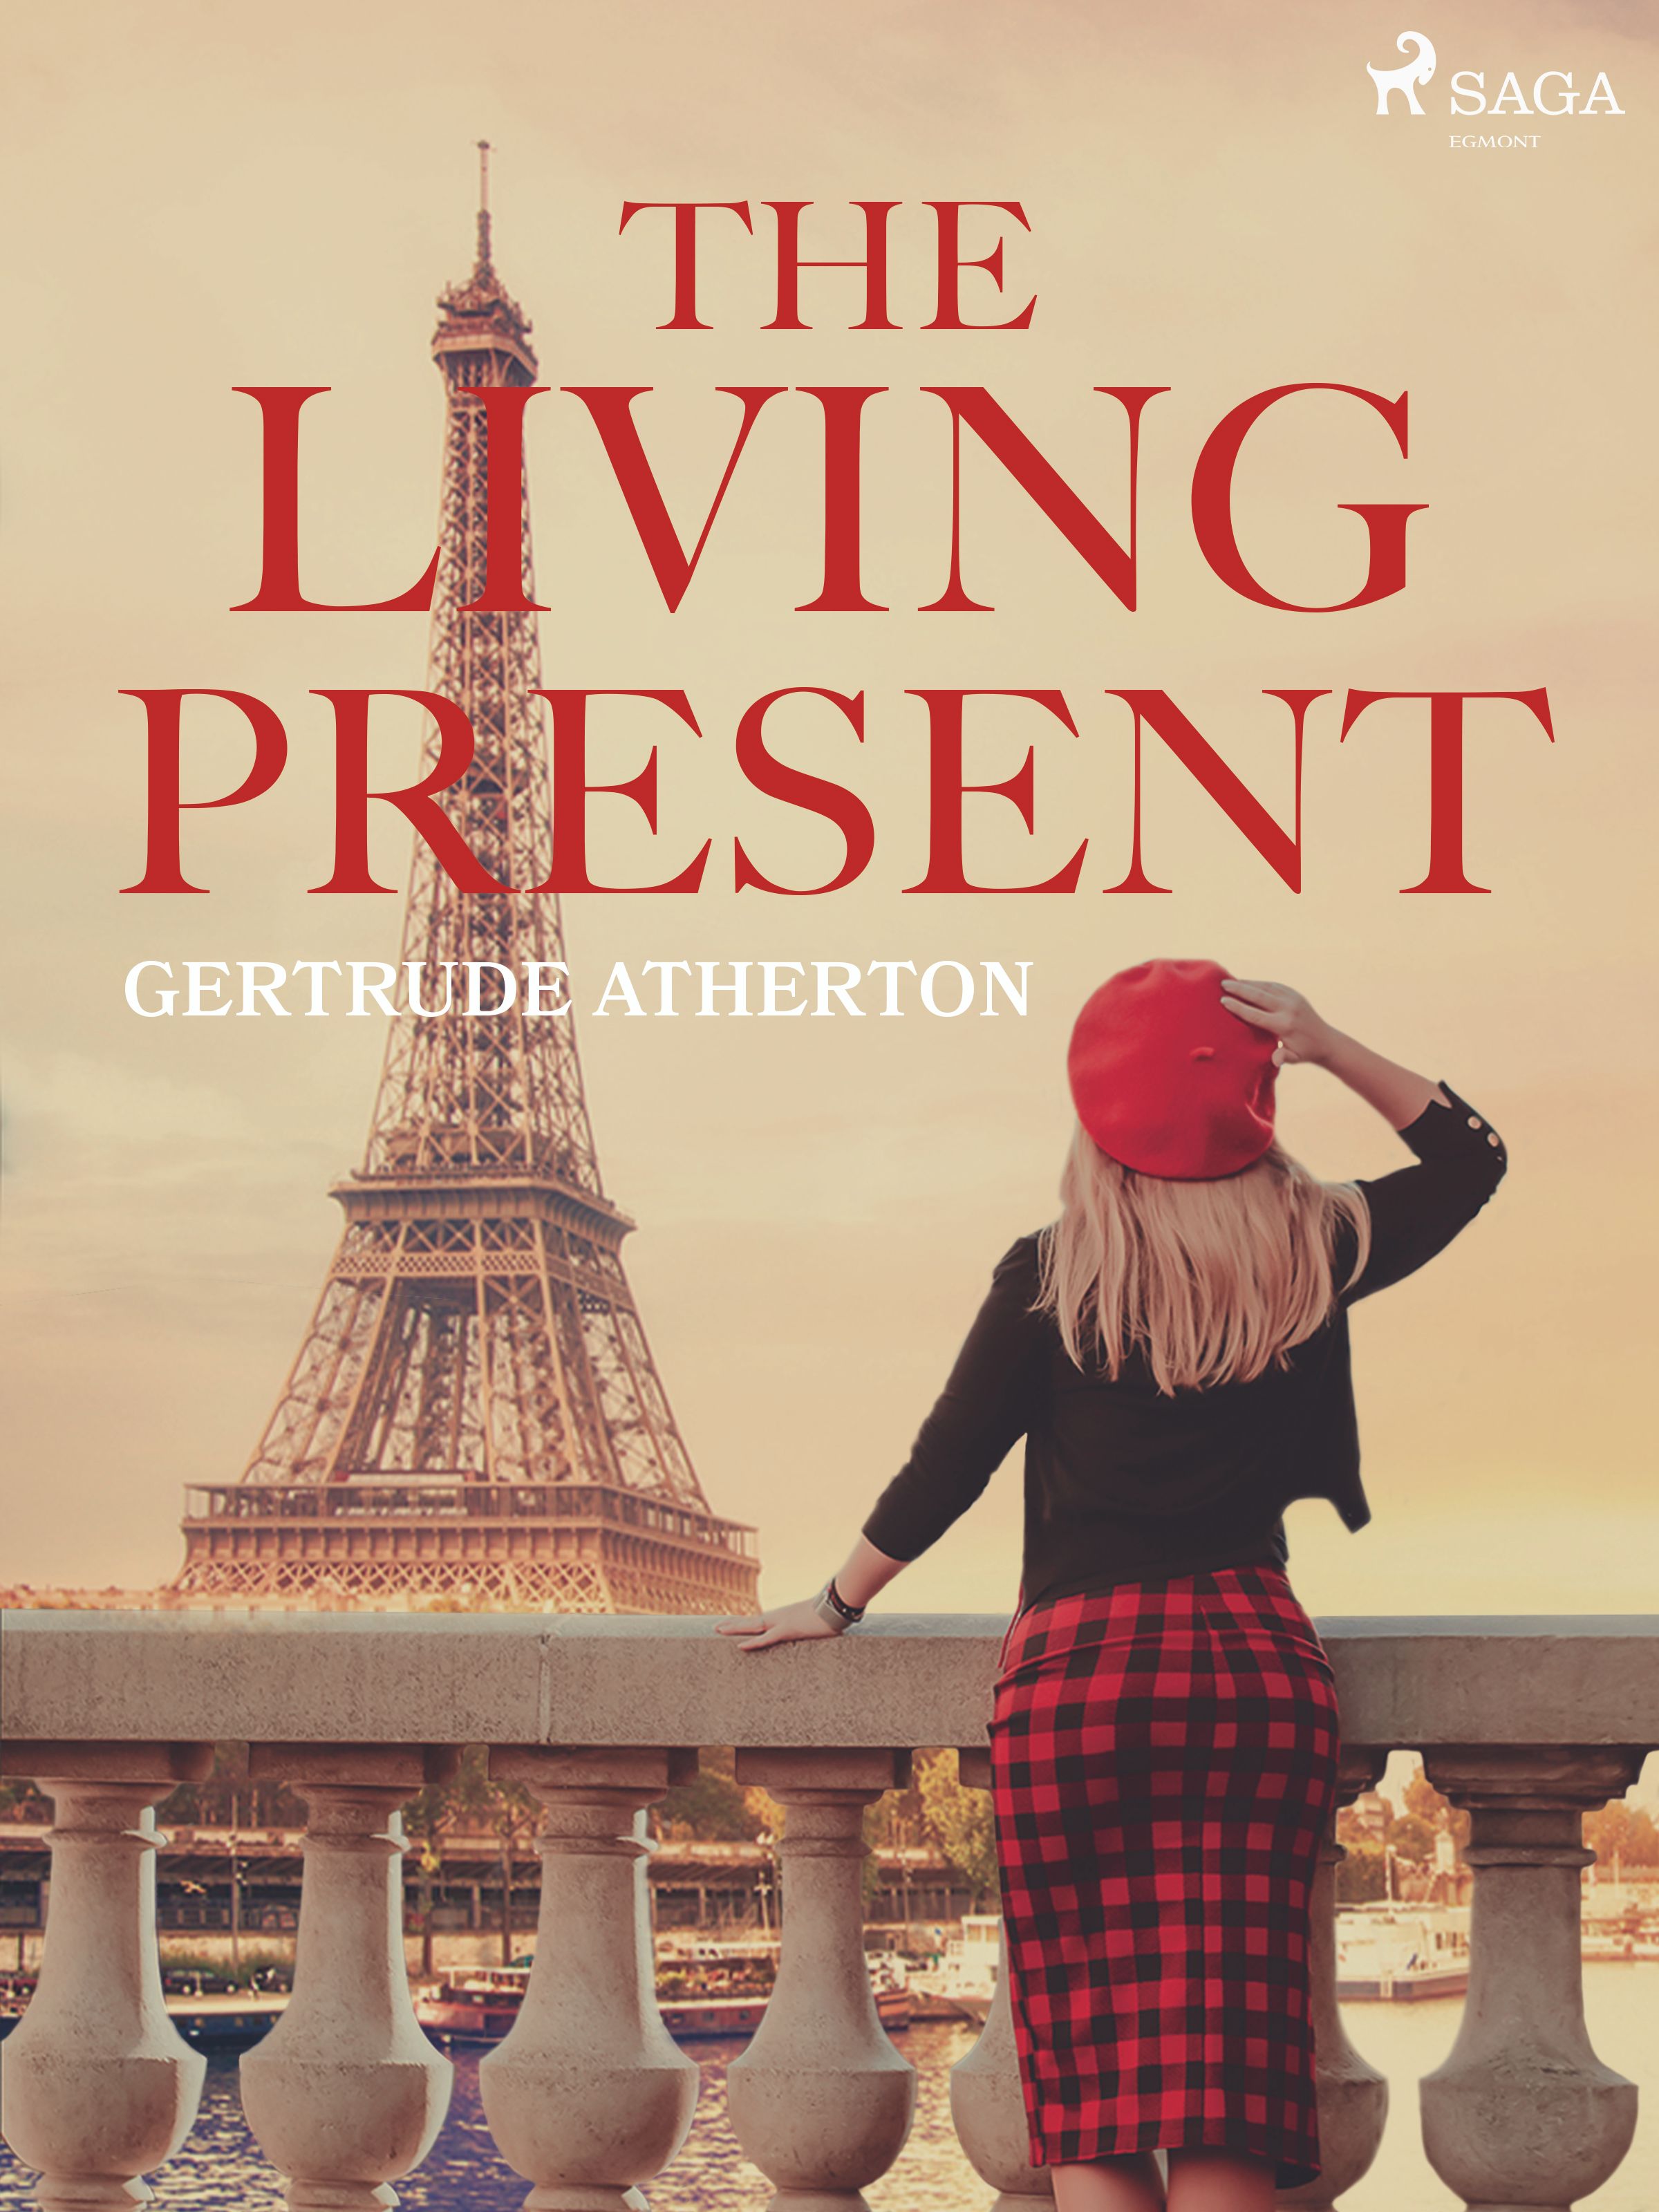 The Living Present, e-bog af Gertrude Atherton